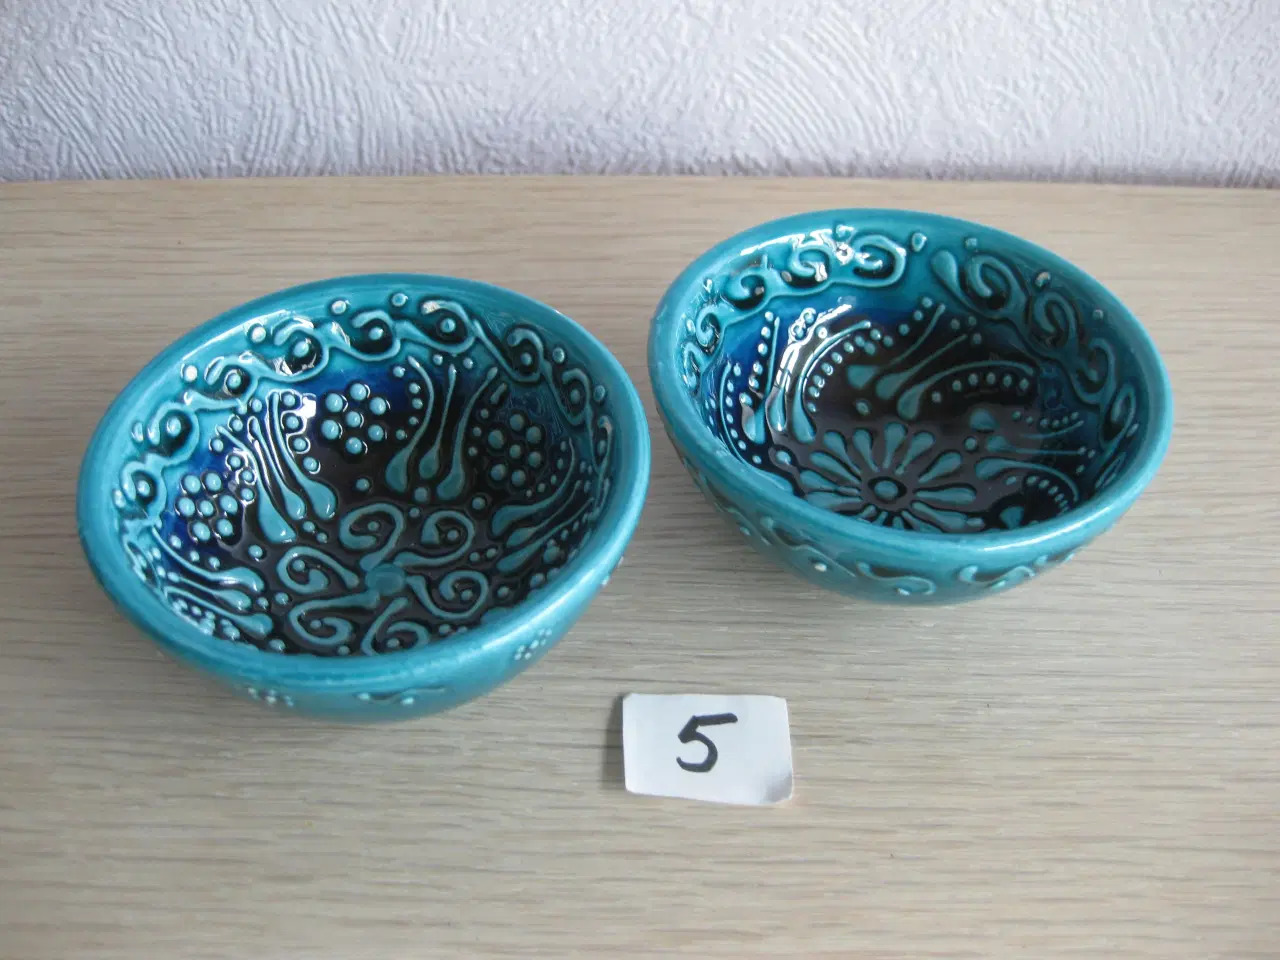 Billede 5 - Små skåle i keramik - fra "dengang" ;-)